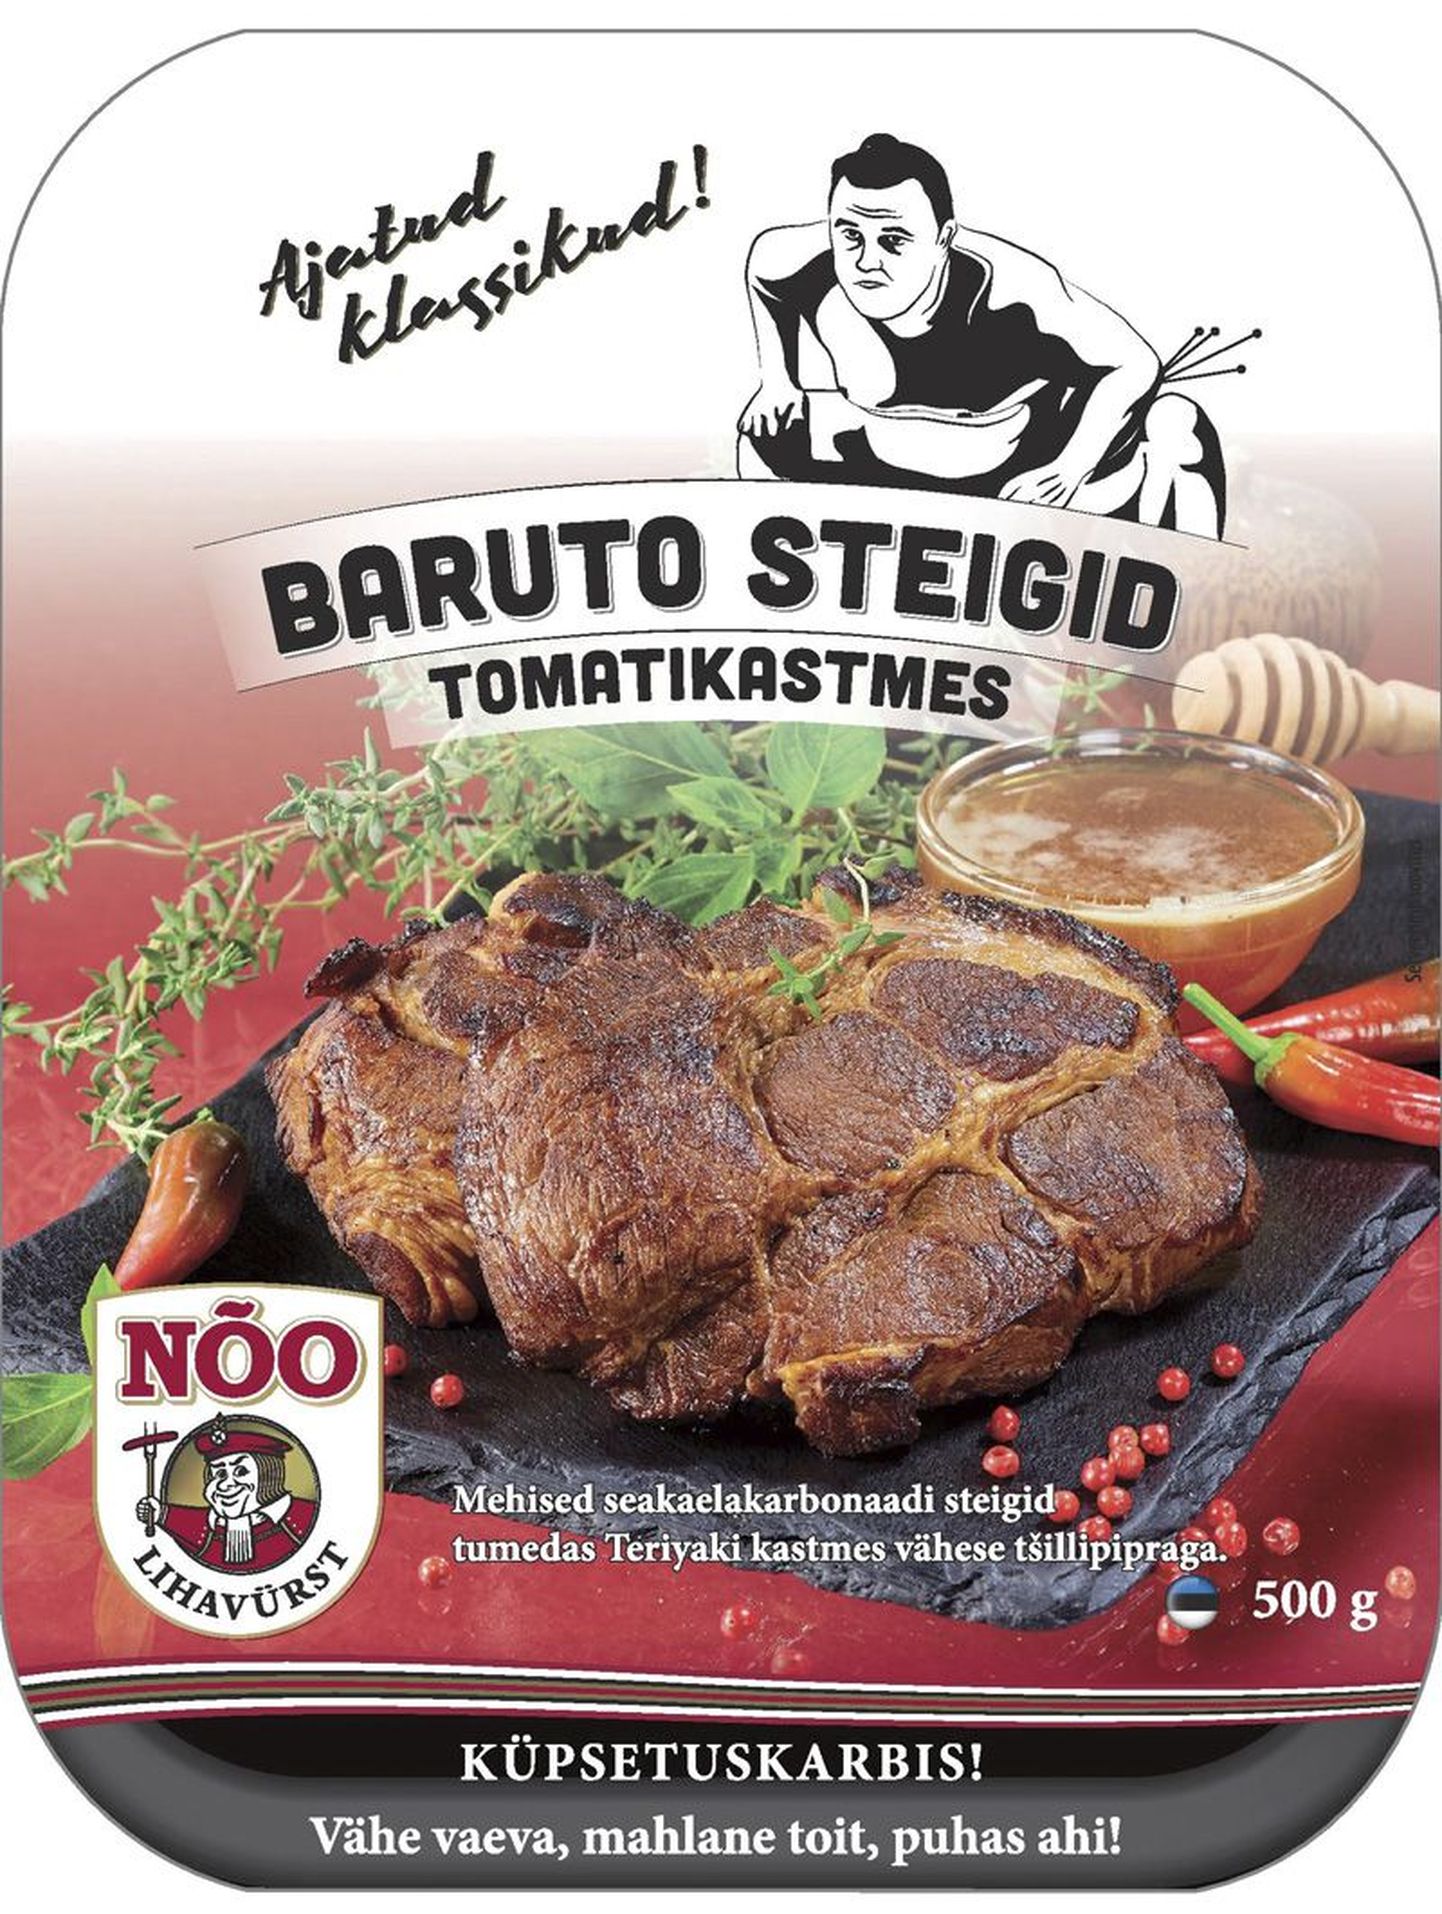 Baruto pilt kaunistab steike.